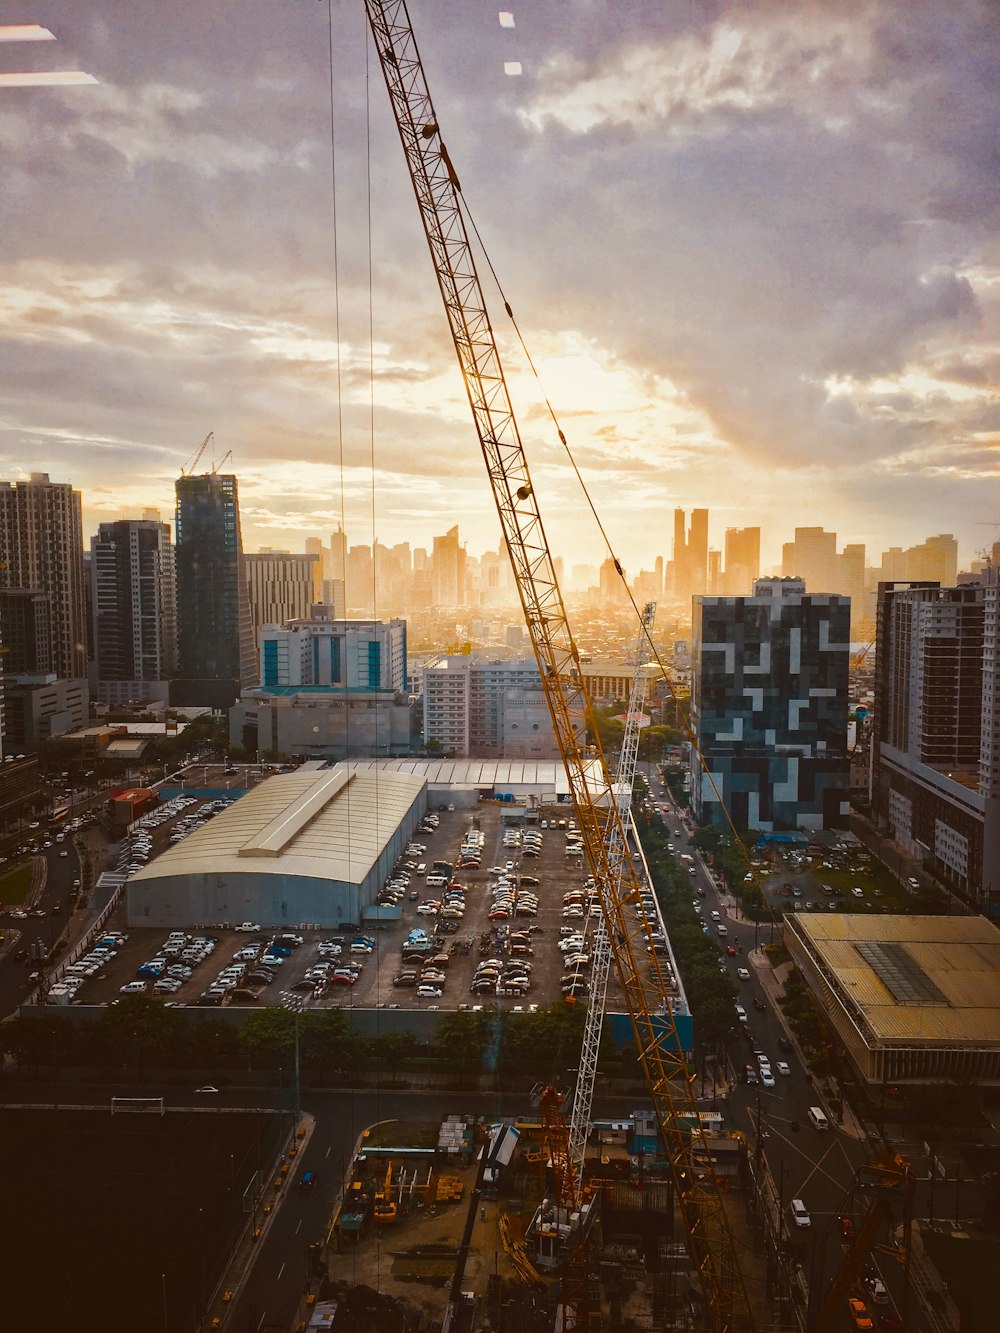 a crane in a city